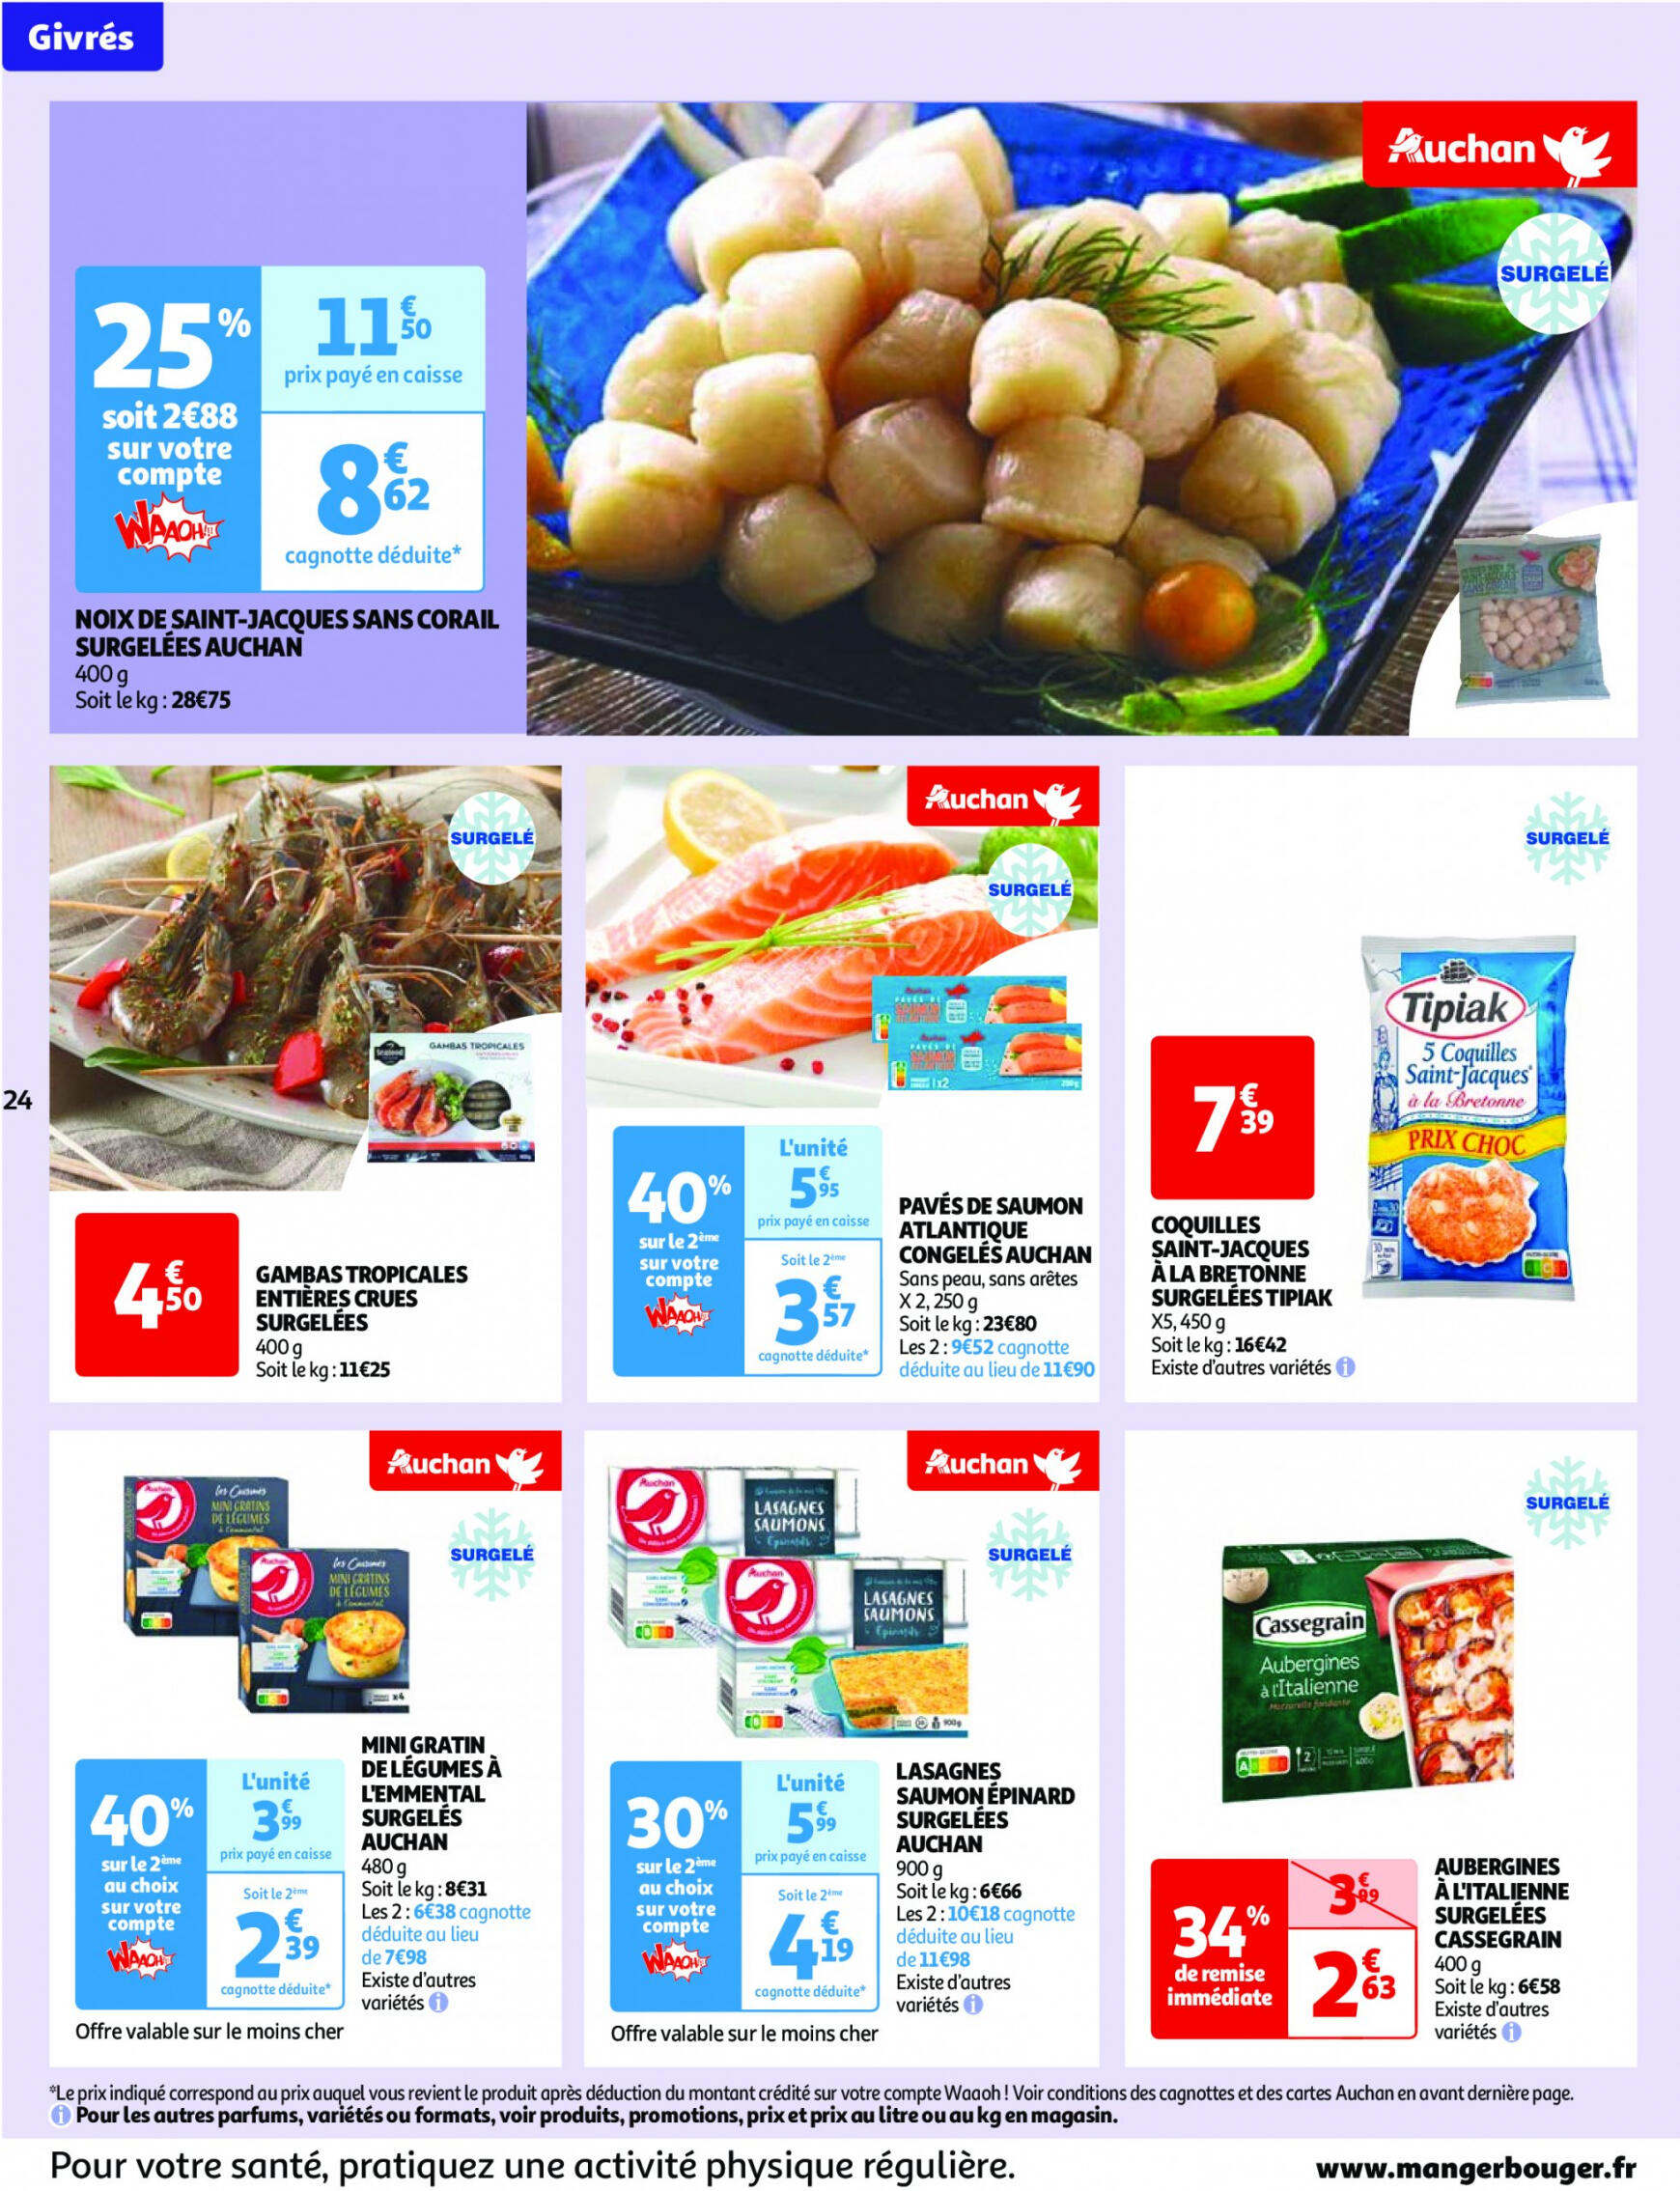 auchan - Prospectus Auchan actuel 14.05. - 21.05. - page: 24